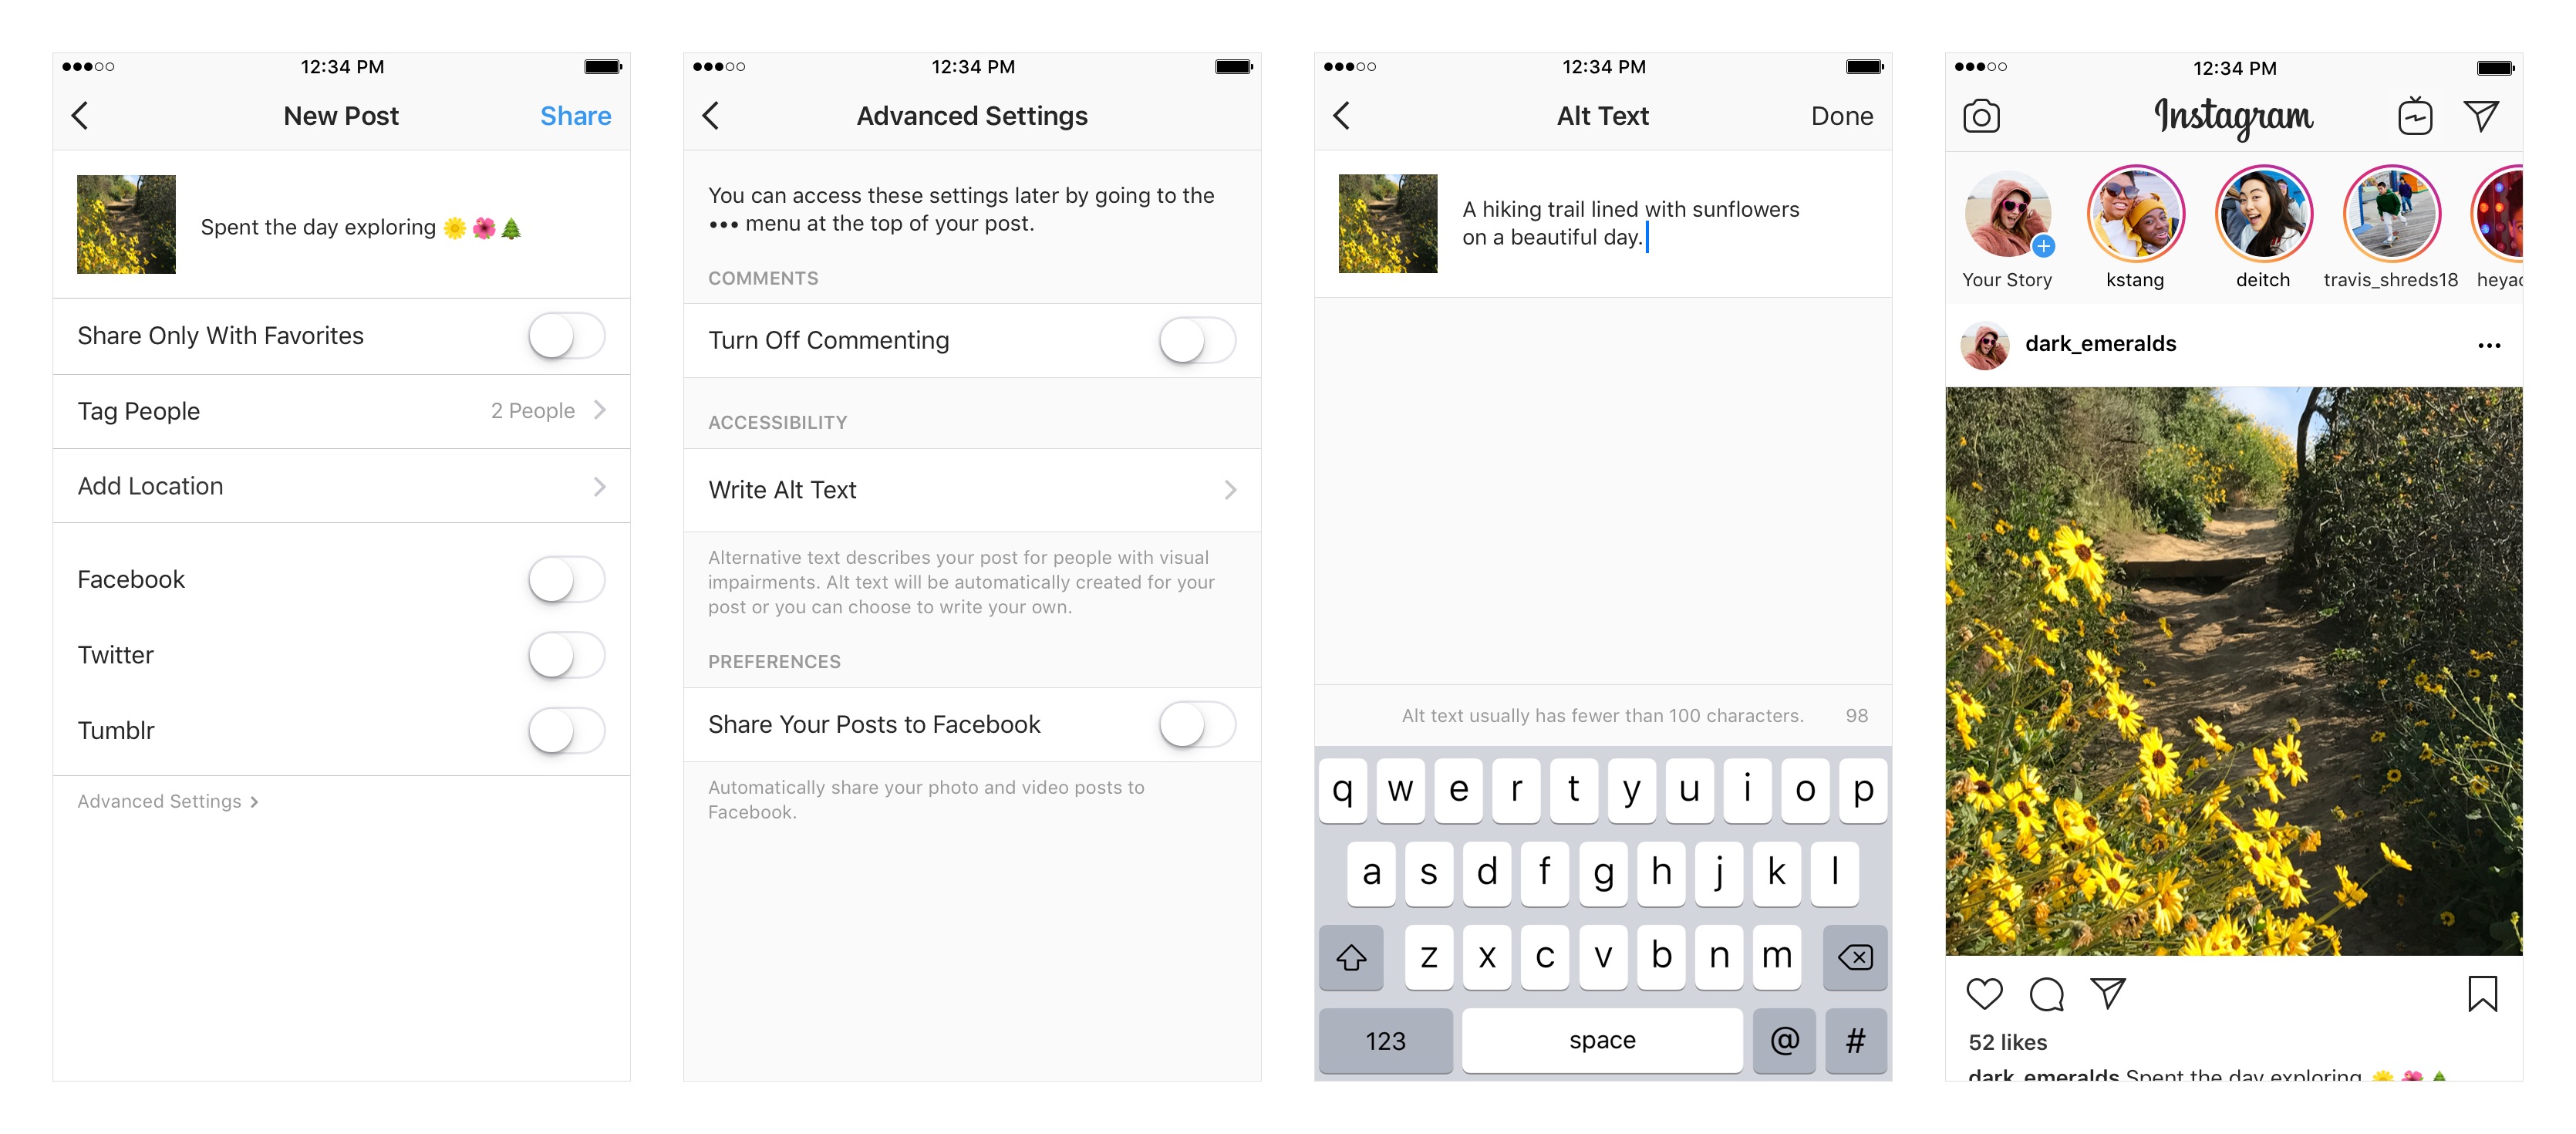 Instagram : l'IA est introduite pour rendre le réseau social plus accessible